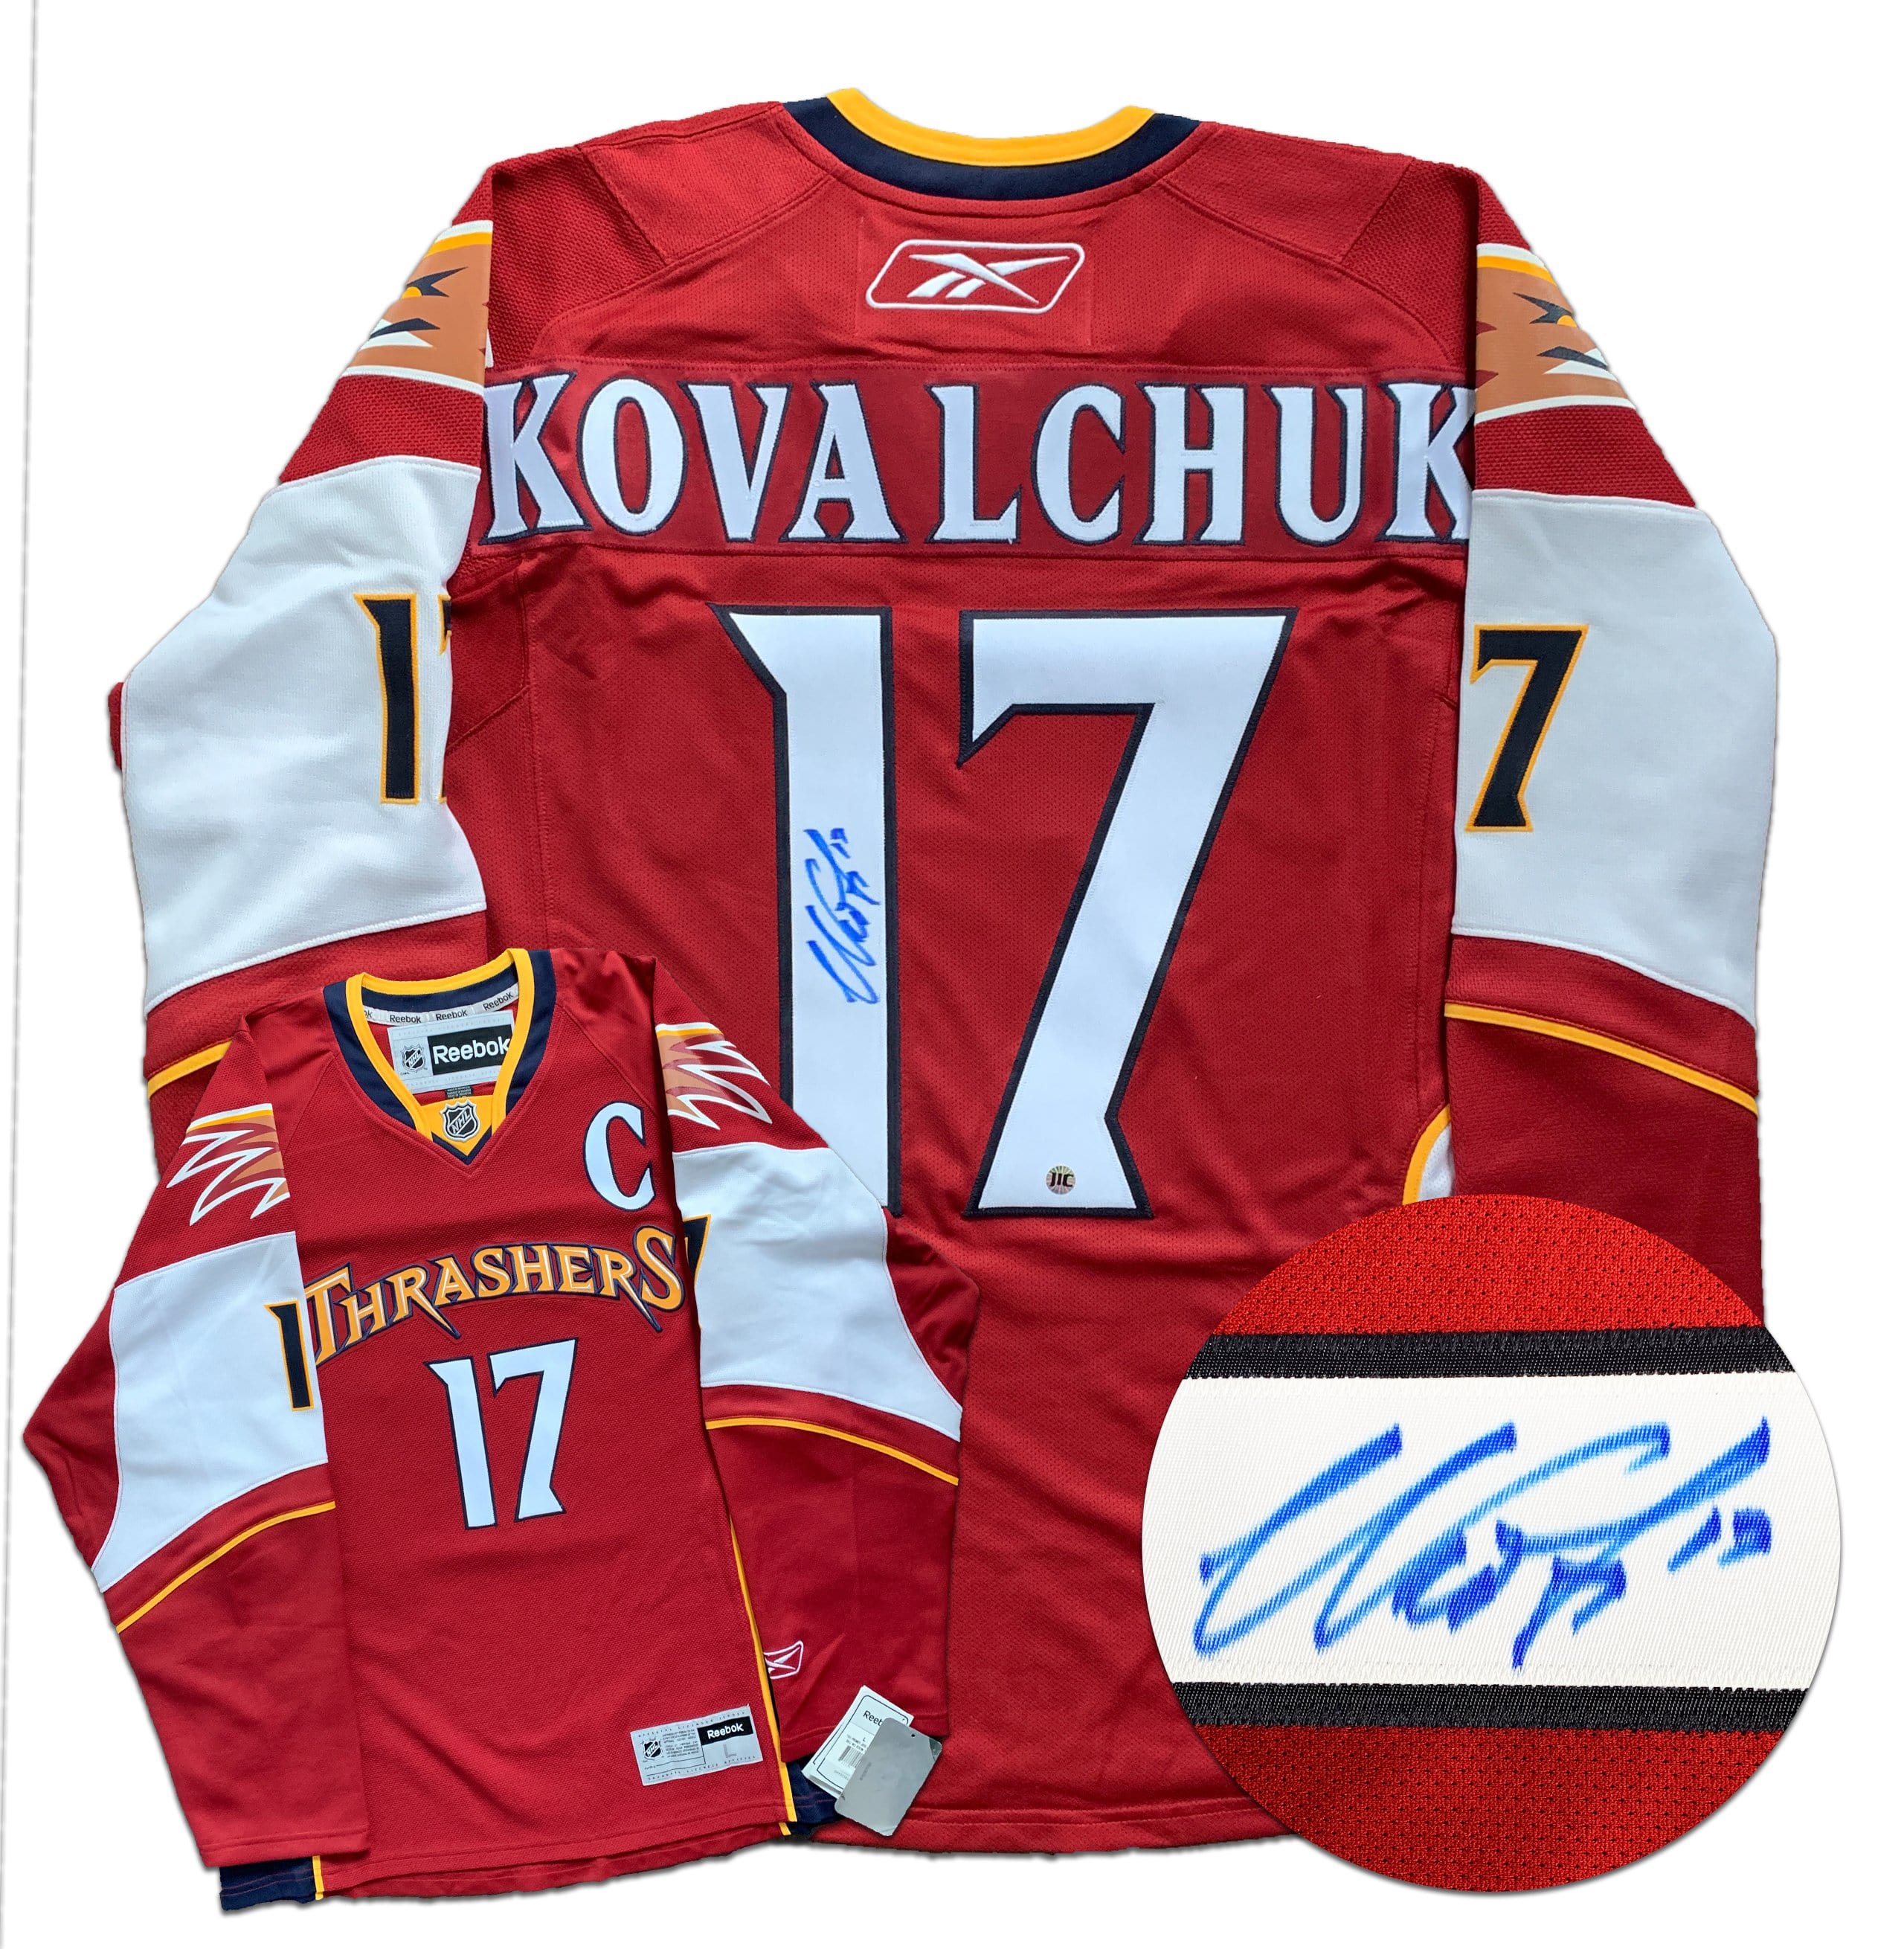 kovalchuk thrashers jersey